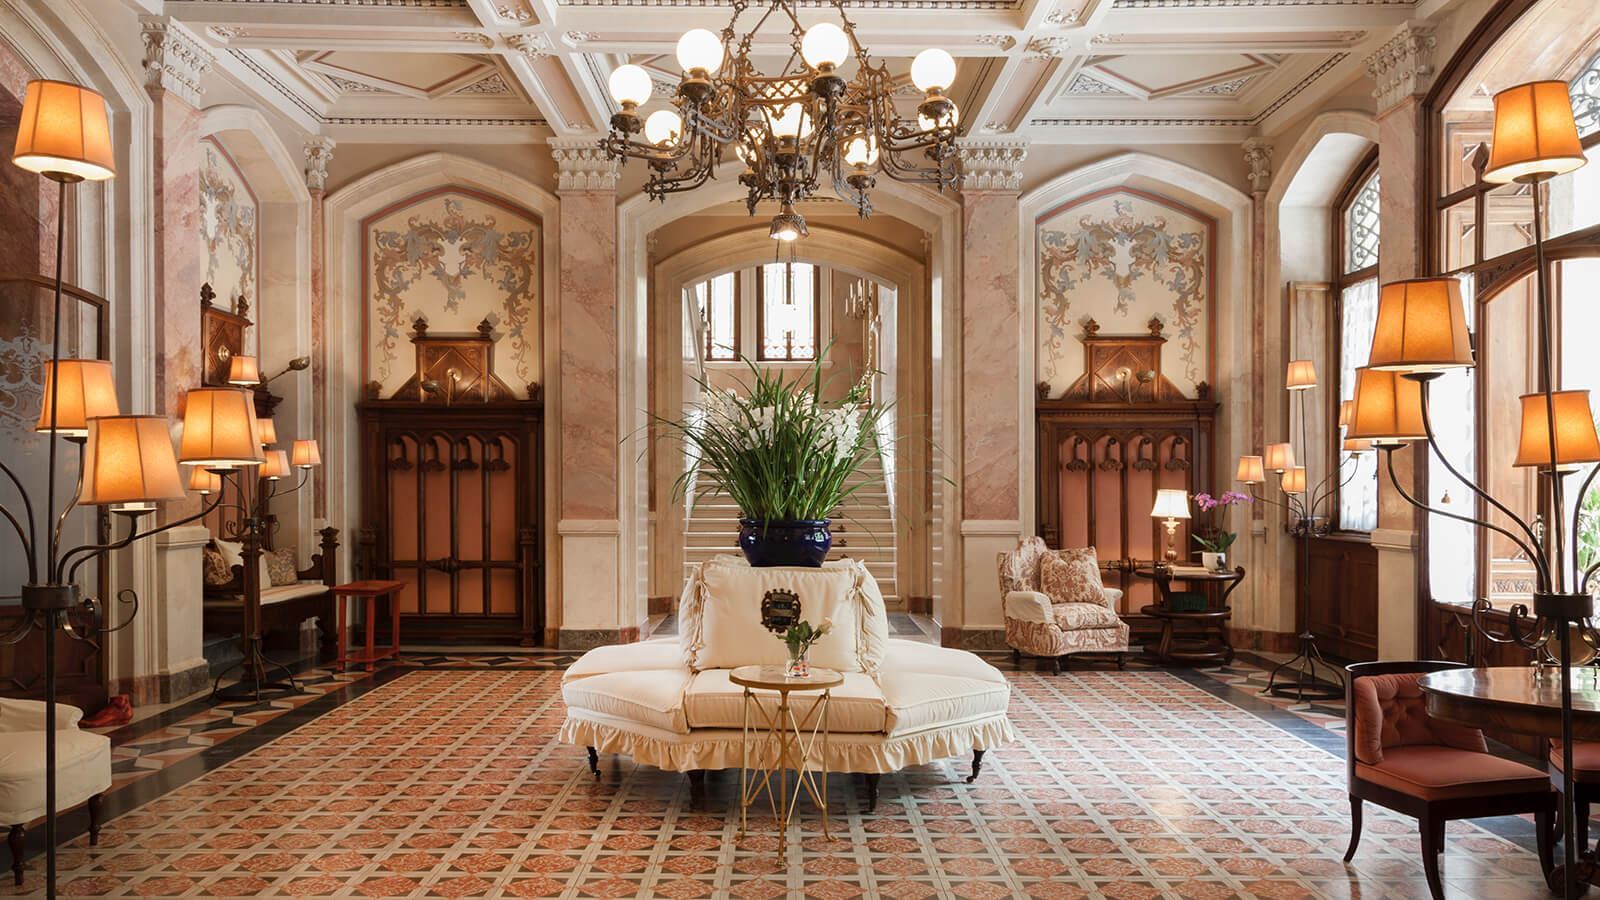 Grand Hotel a Villa Feltrinelli - The magnificent hall